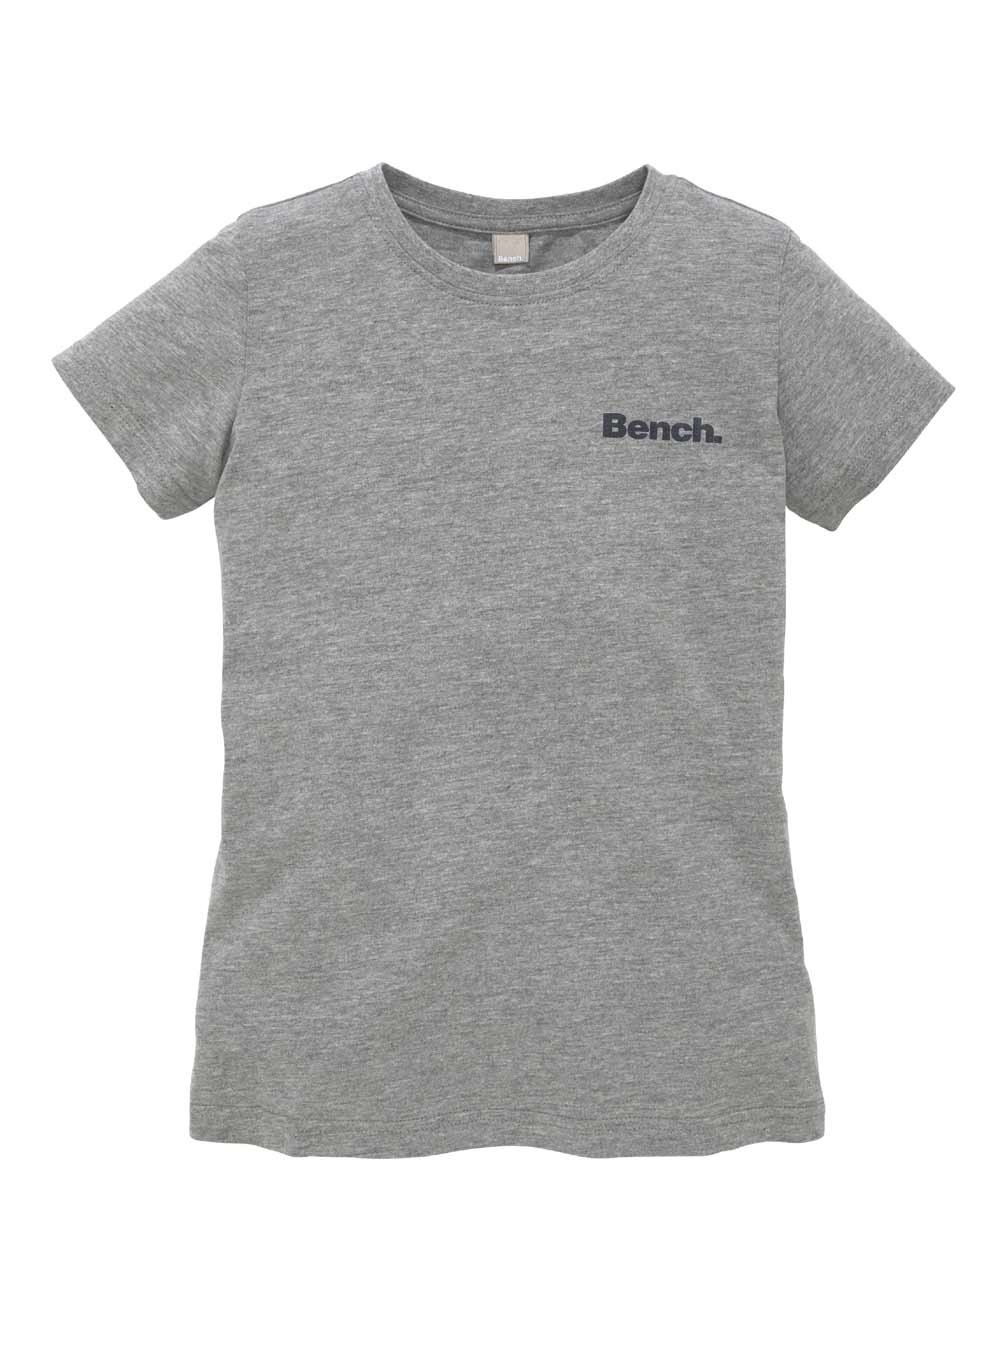 – Speziellities Marken-Kinder-Shirt grau-melange